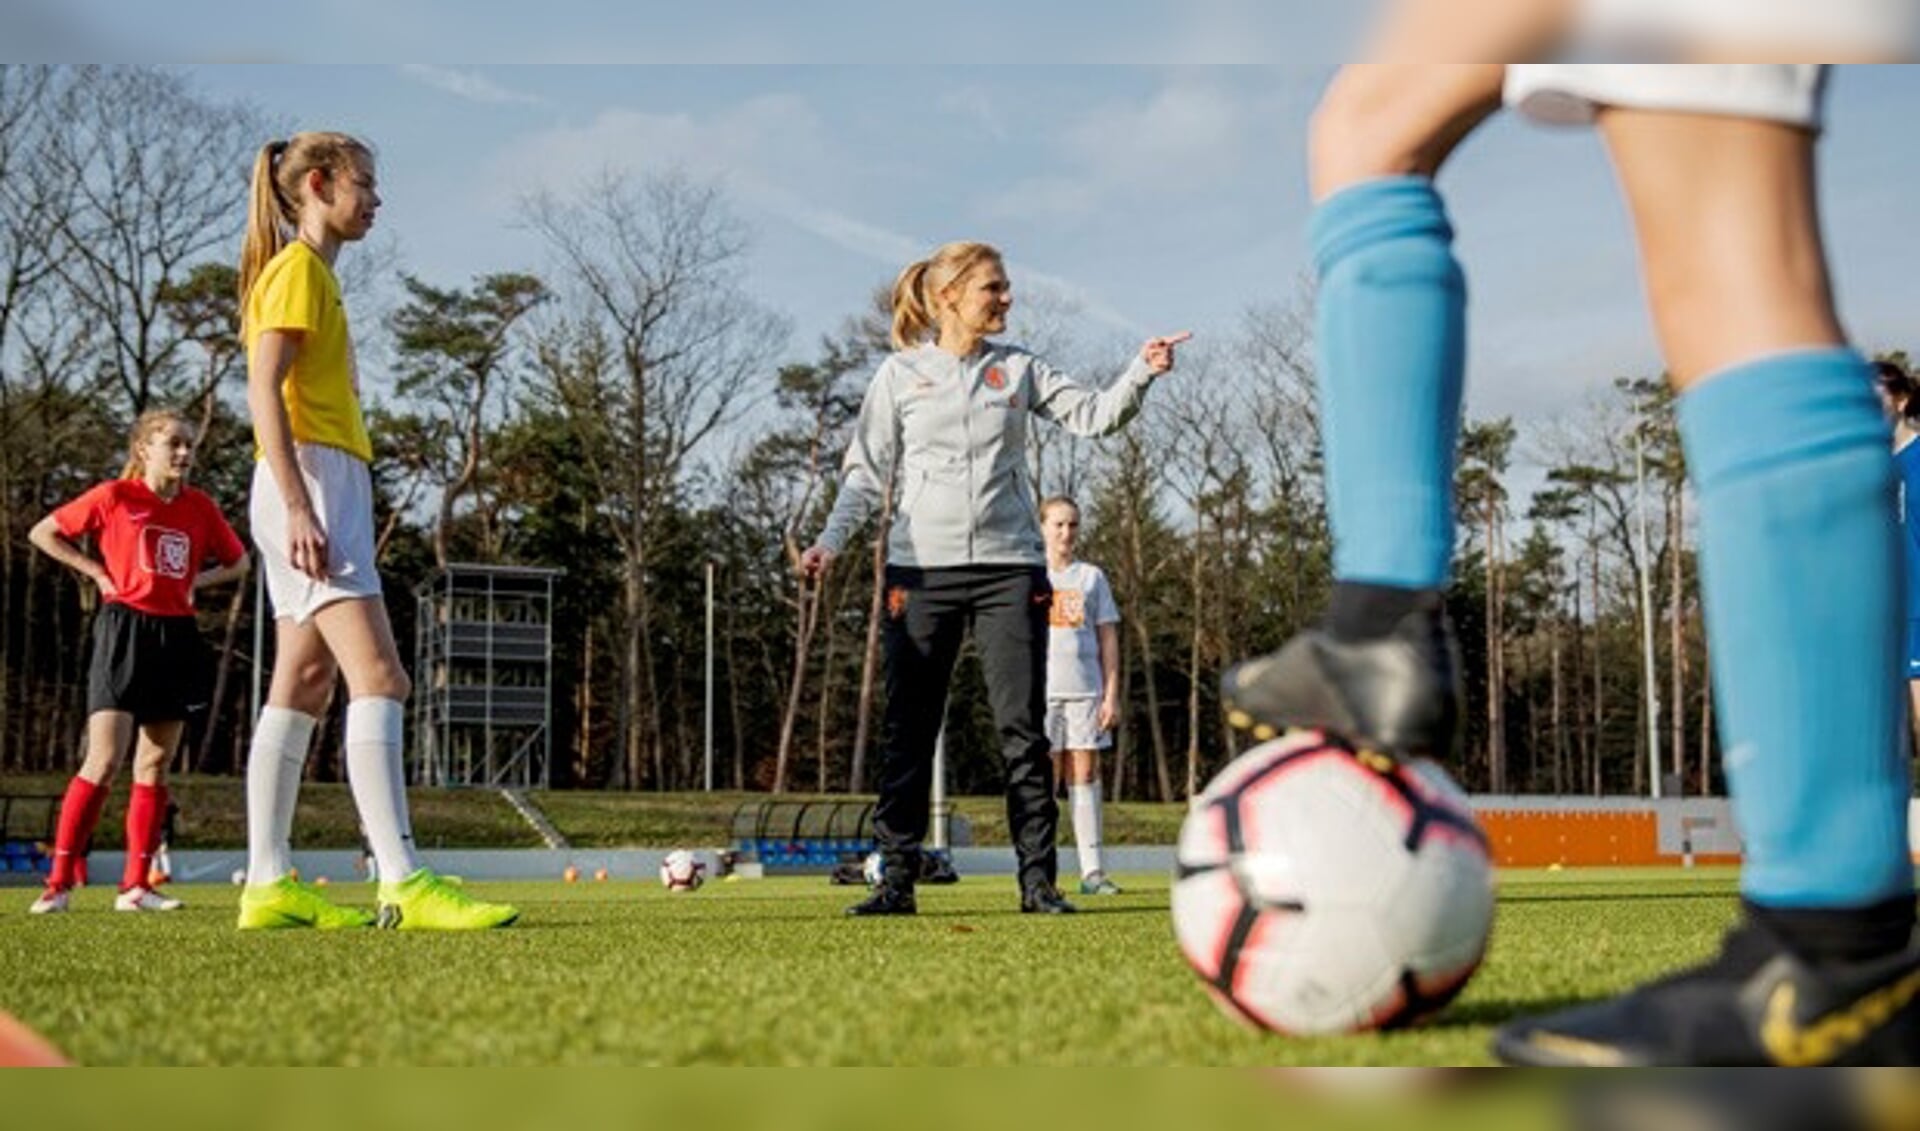 Sarina Wiegman, bondscoach van de Oranje Leeuwinnen, en sinds 14 februari ambassadeur van het meiden- en vrouwenvoetbal.